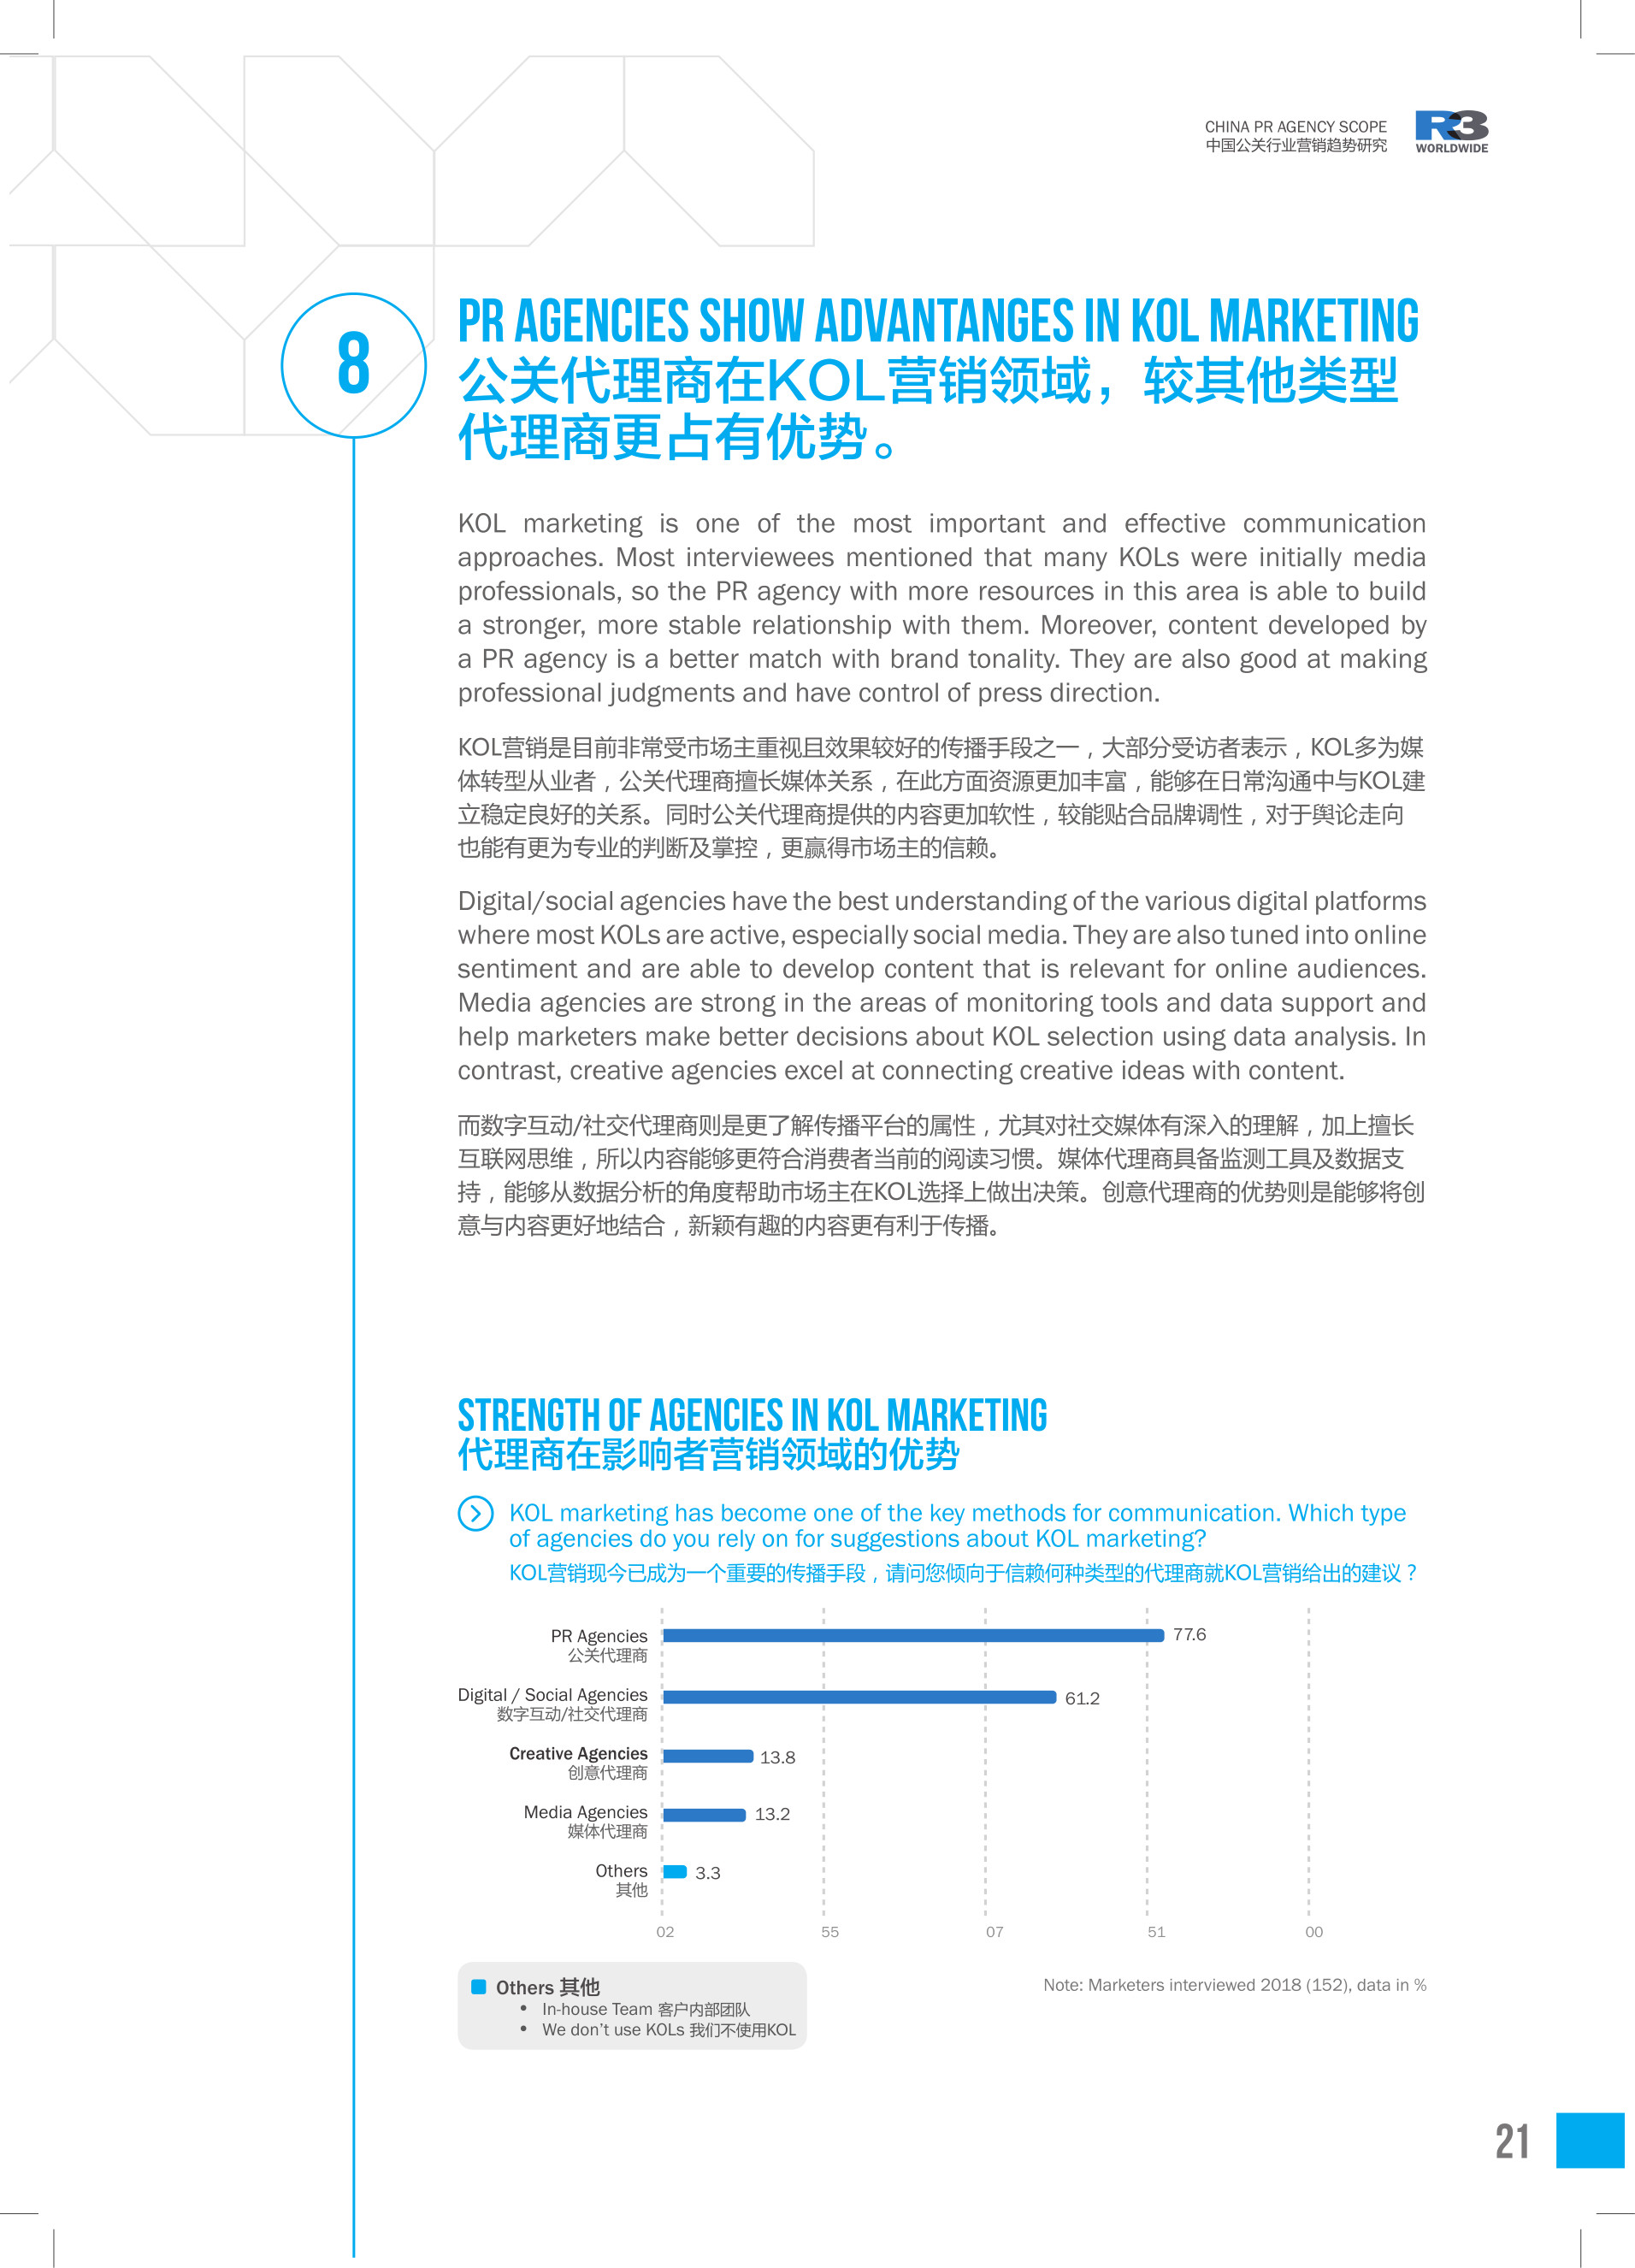 2019中国公关行业数据报告